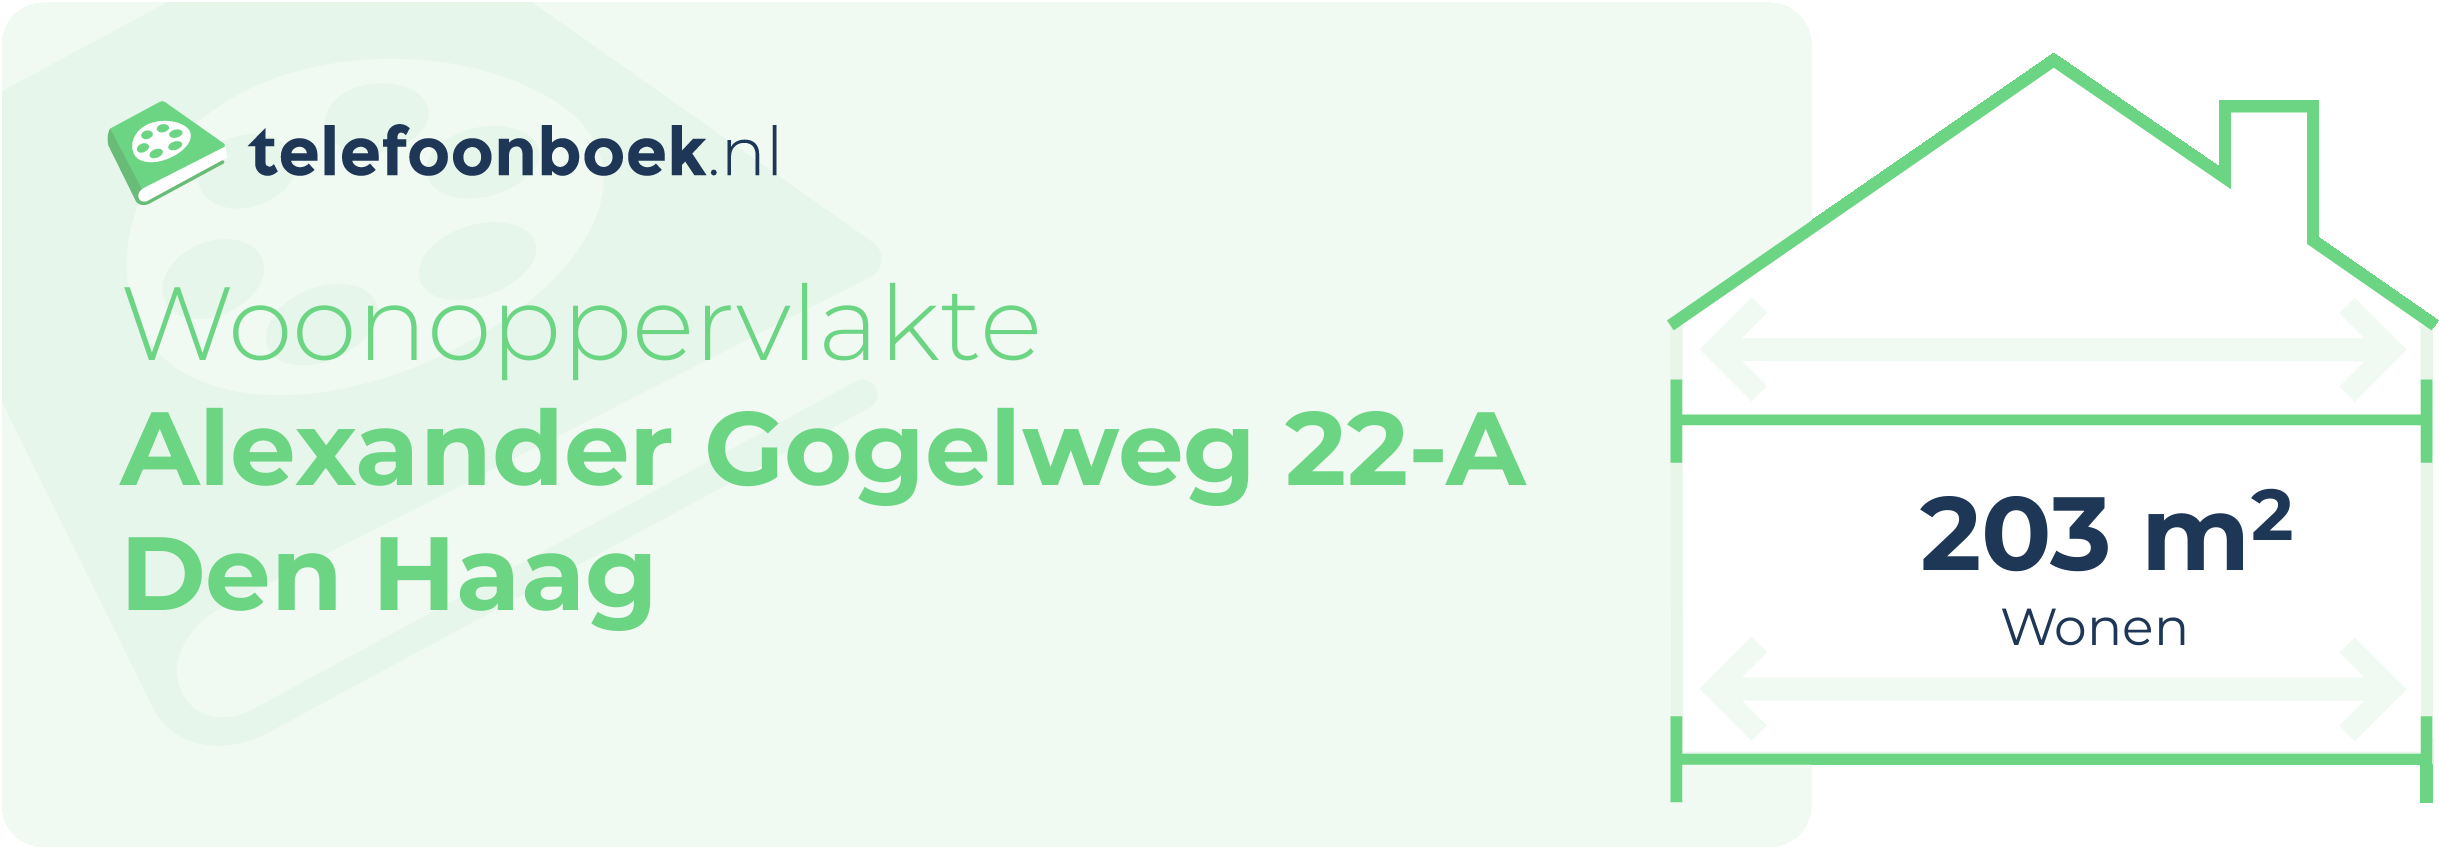 Woonoppervlakte Alexander Gogelweg 22-A Den Haag